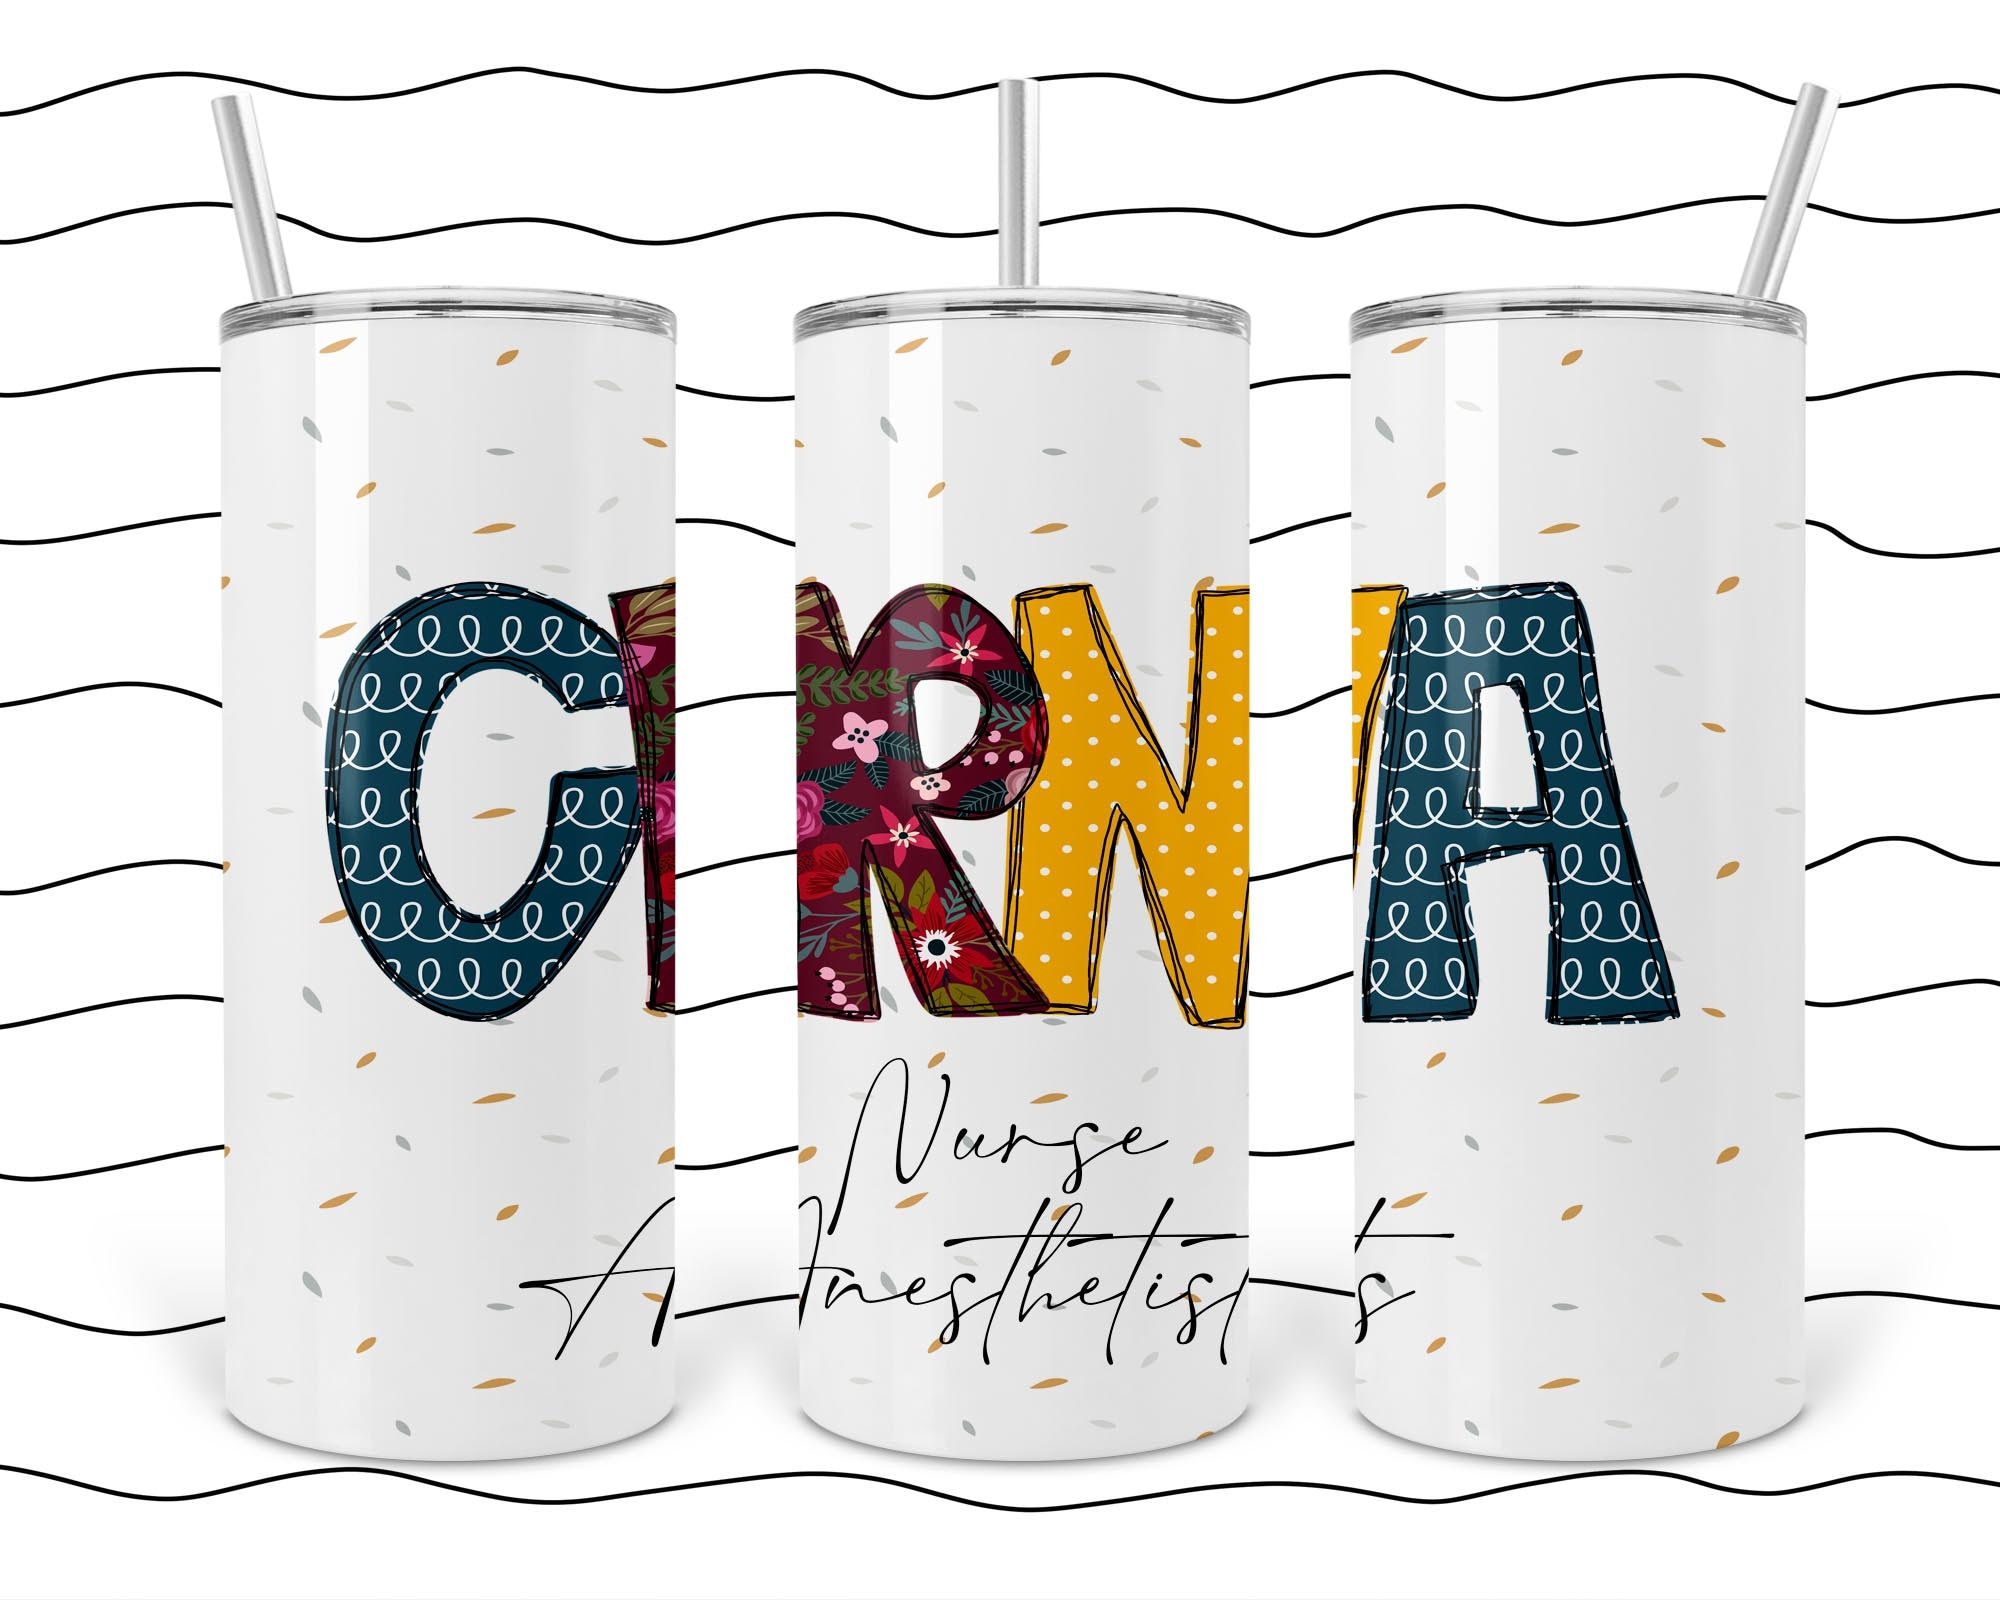 CRNA Certified Registered Nurse Anesthetist floral career profession sublimation digital download PNG shirt mug tumbler